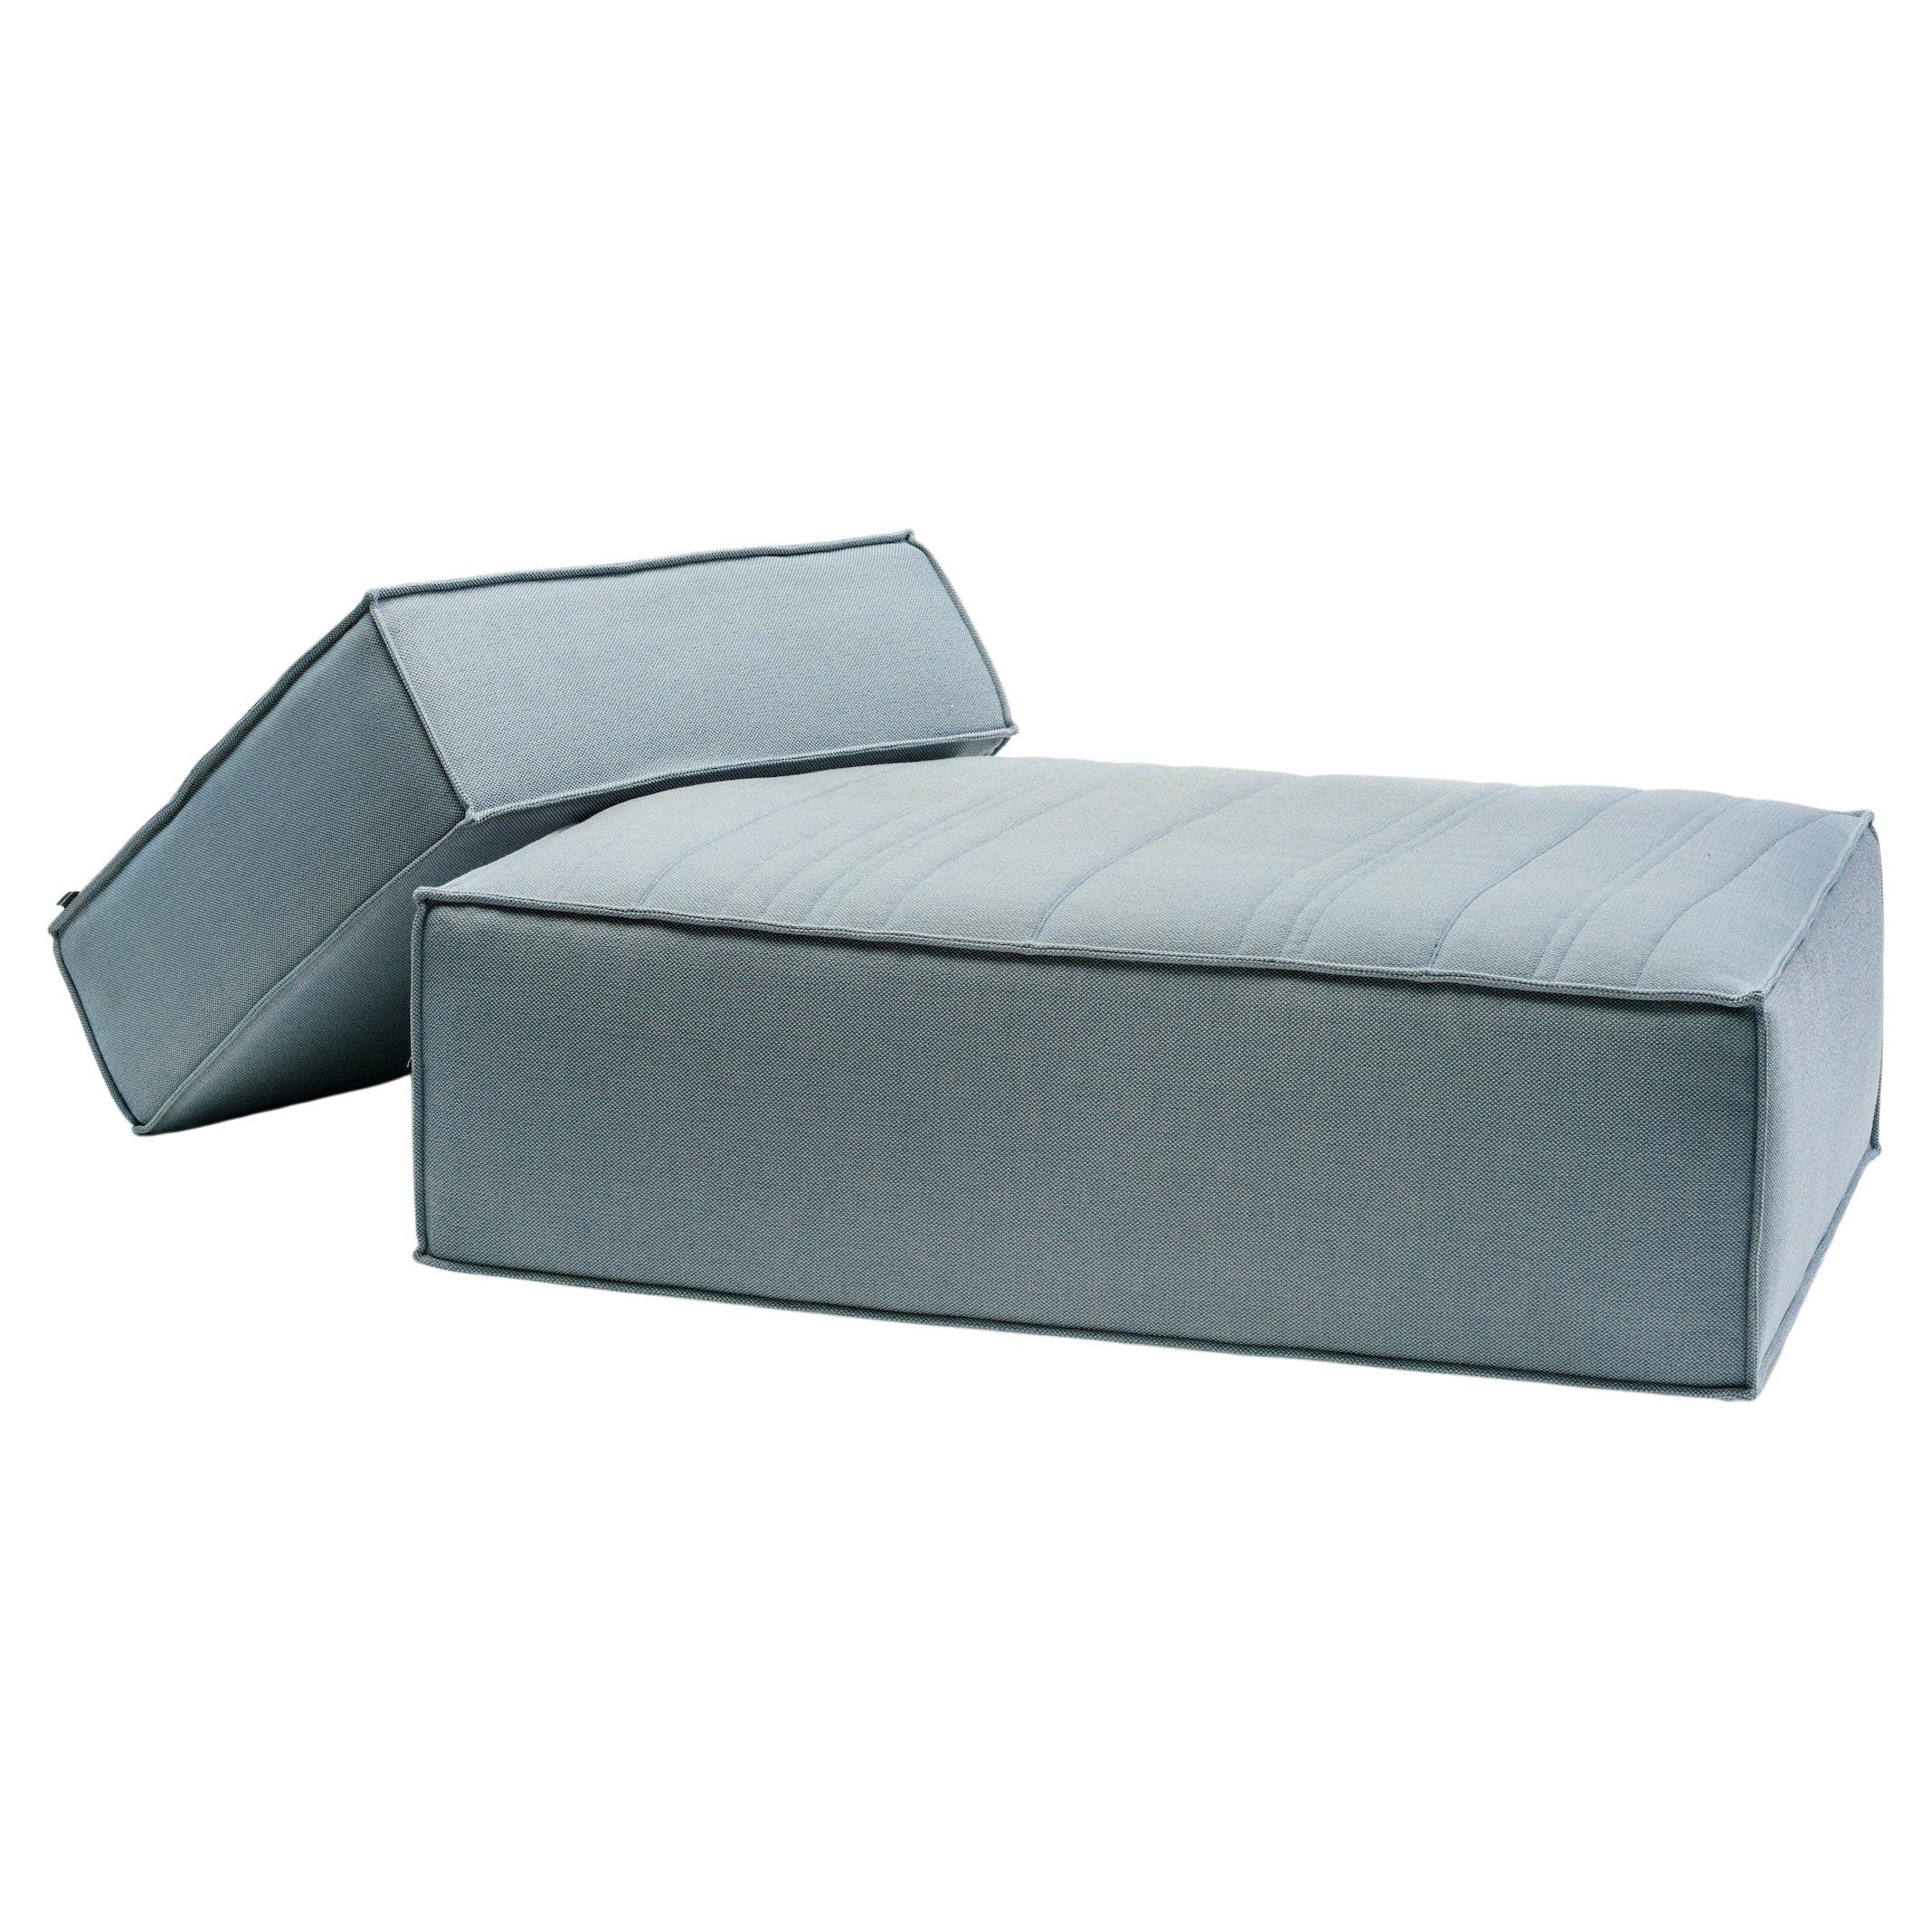 Customizable La Manufacture-Paris Stack Sofa Designed by Nendo